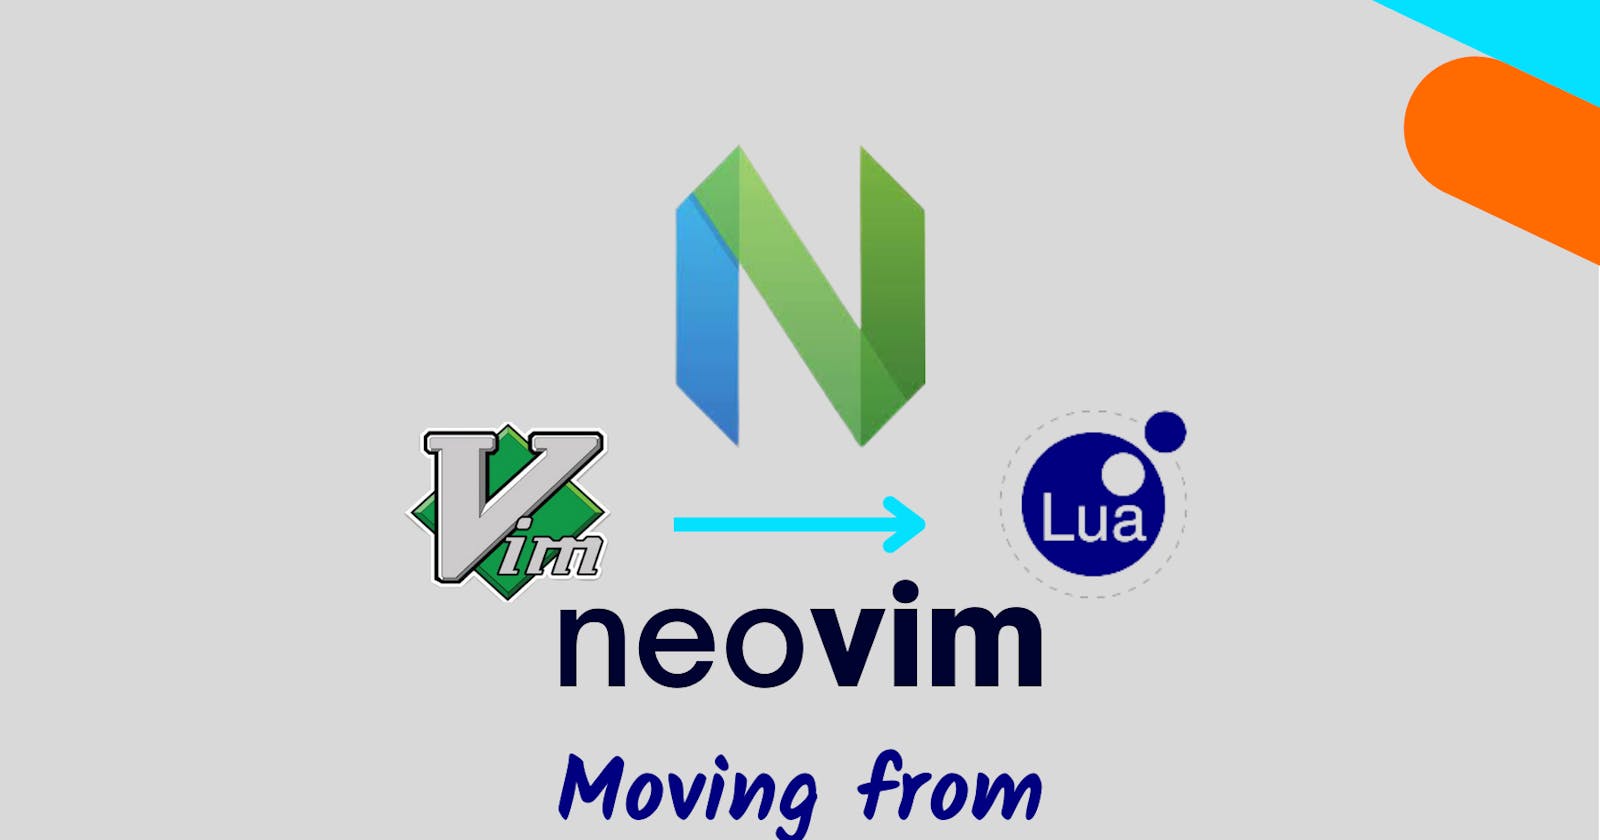 Configure Neovim in Lua